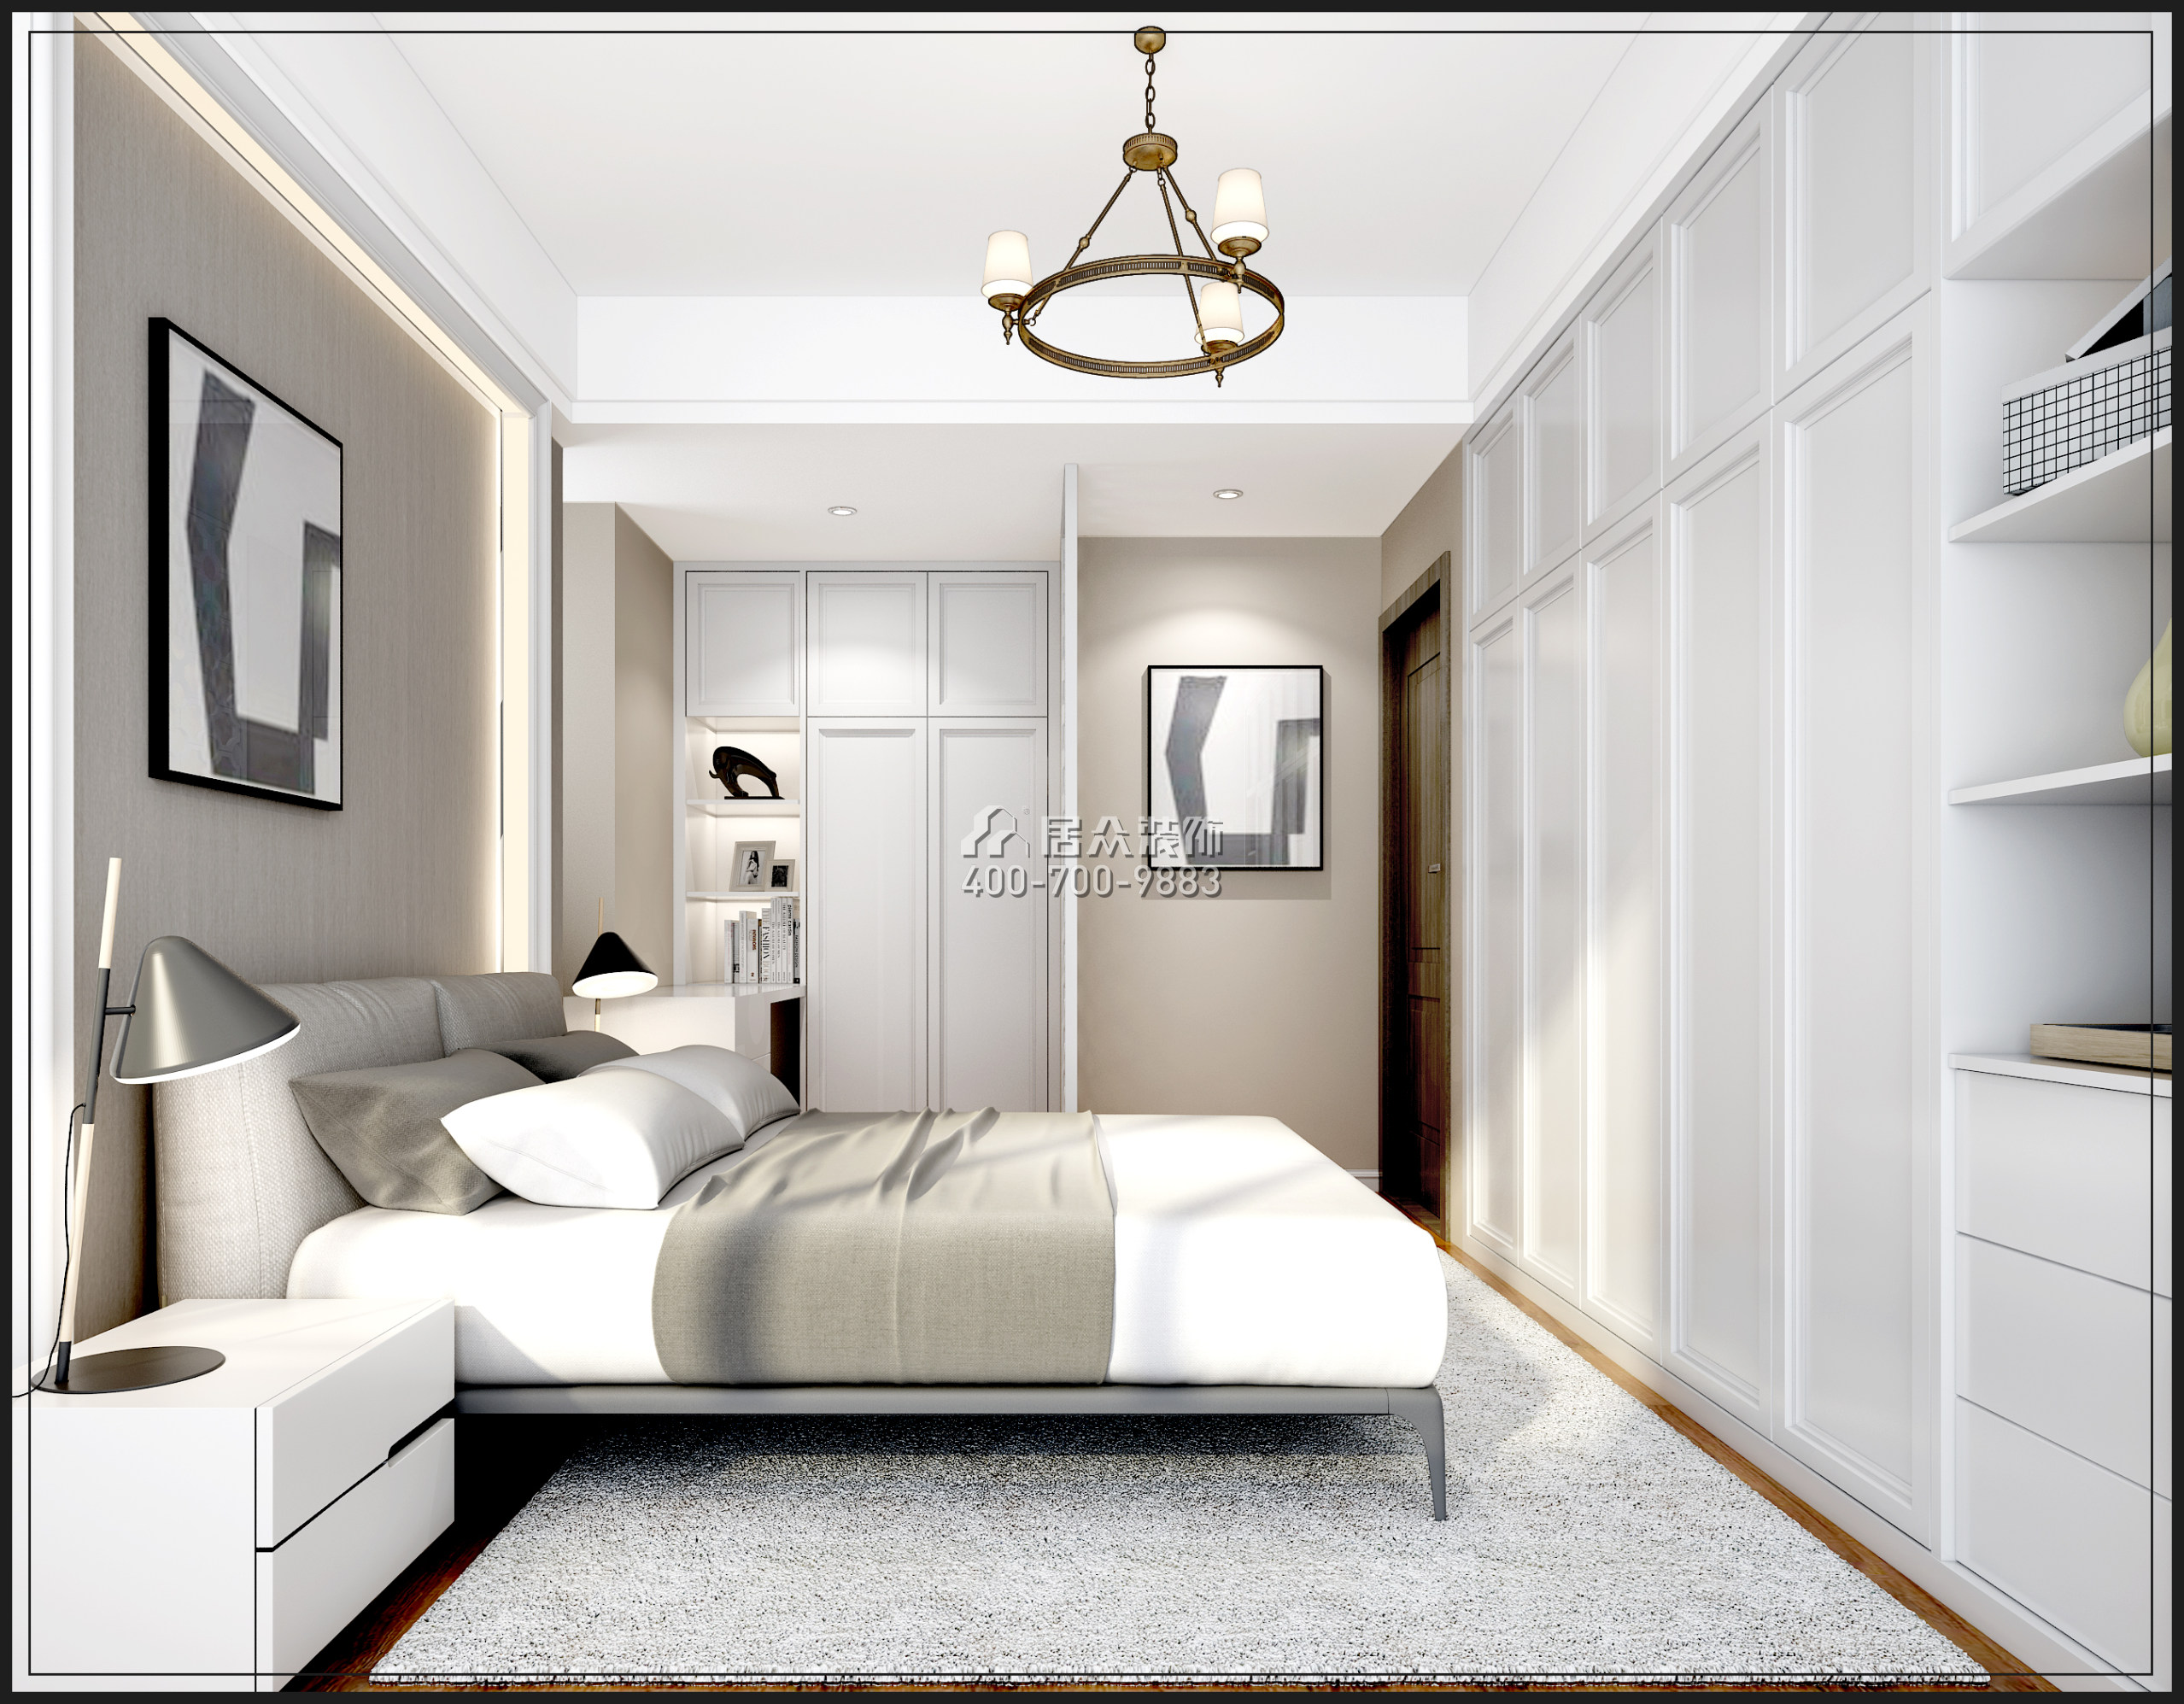 信和自由廣場88平方米歐式風格平層戶型臥室裝修效果圖